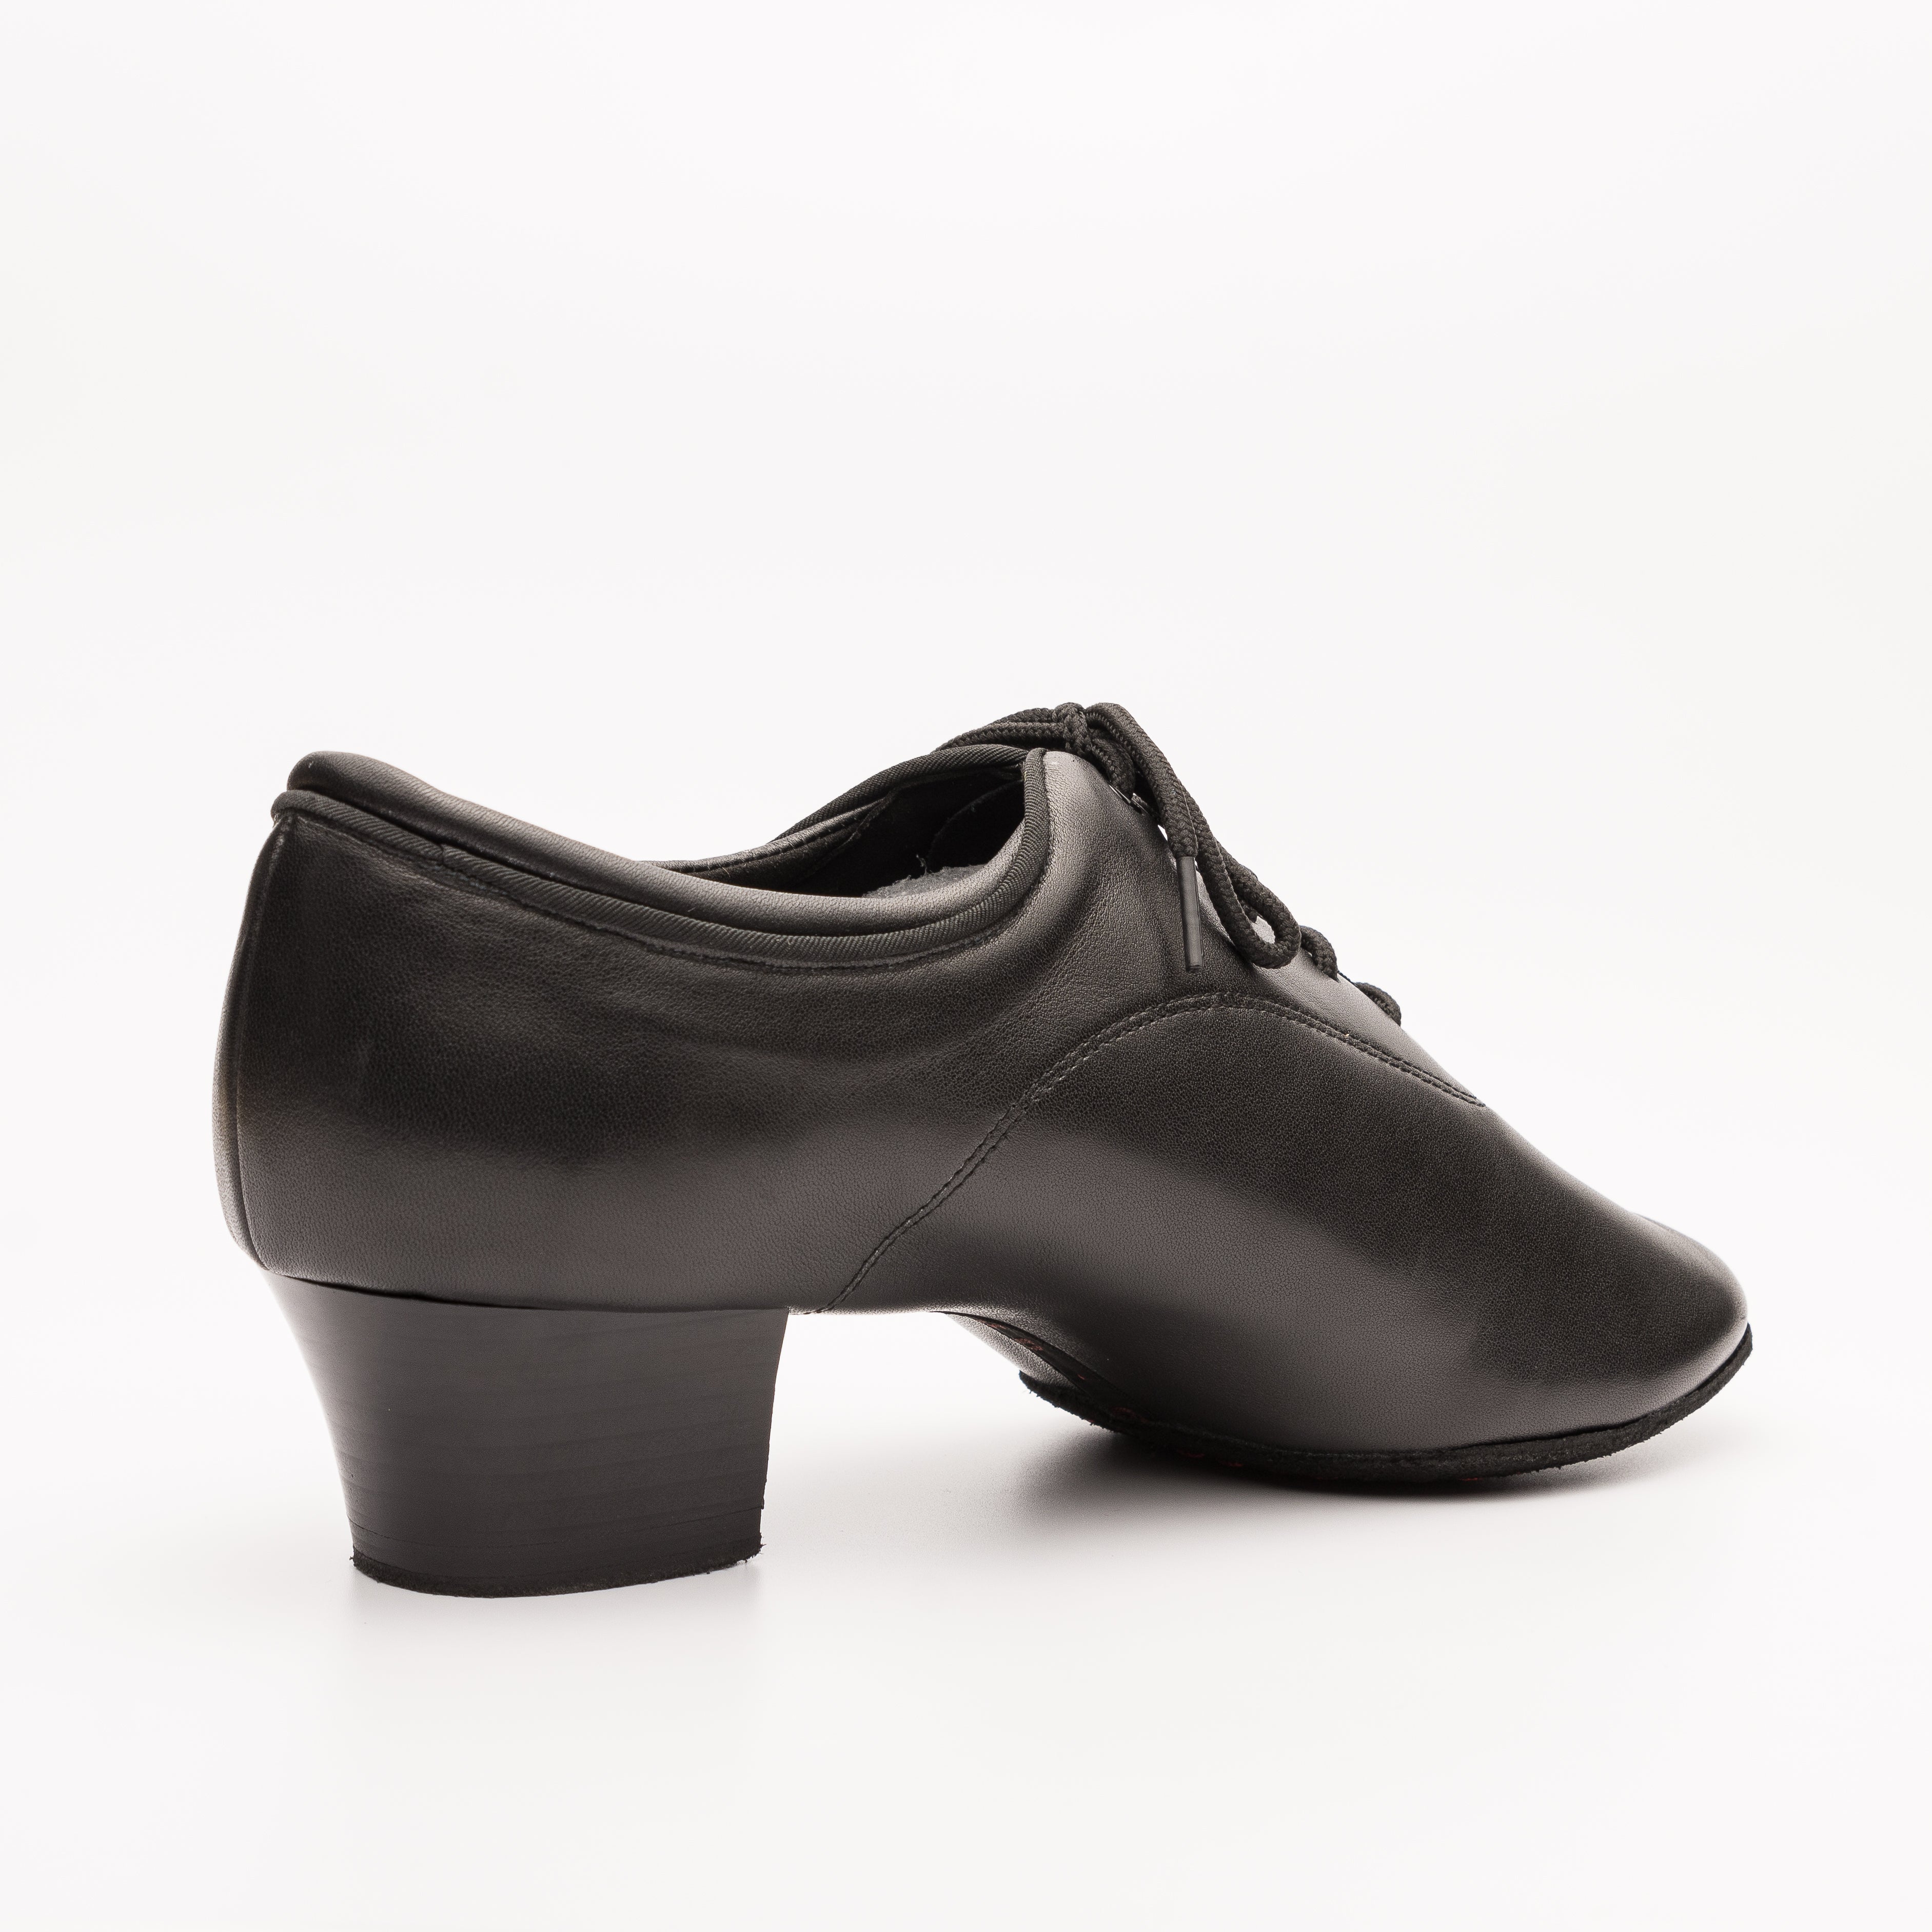 Chaussures en cuir pour hommes, édition PRO - Talon haut